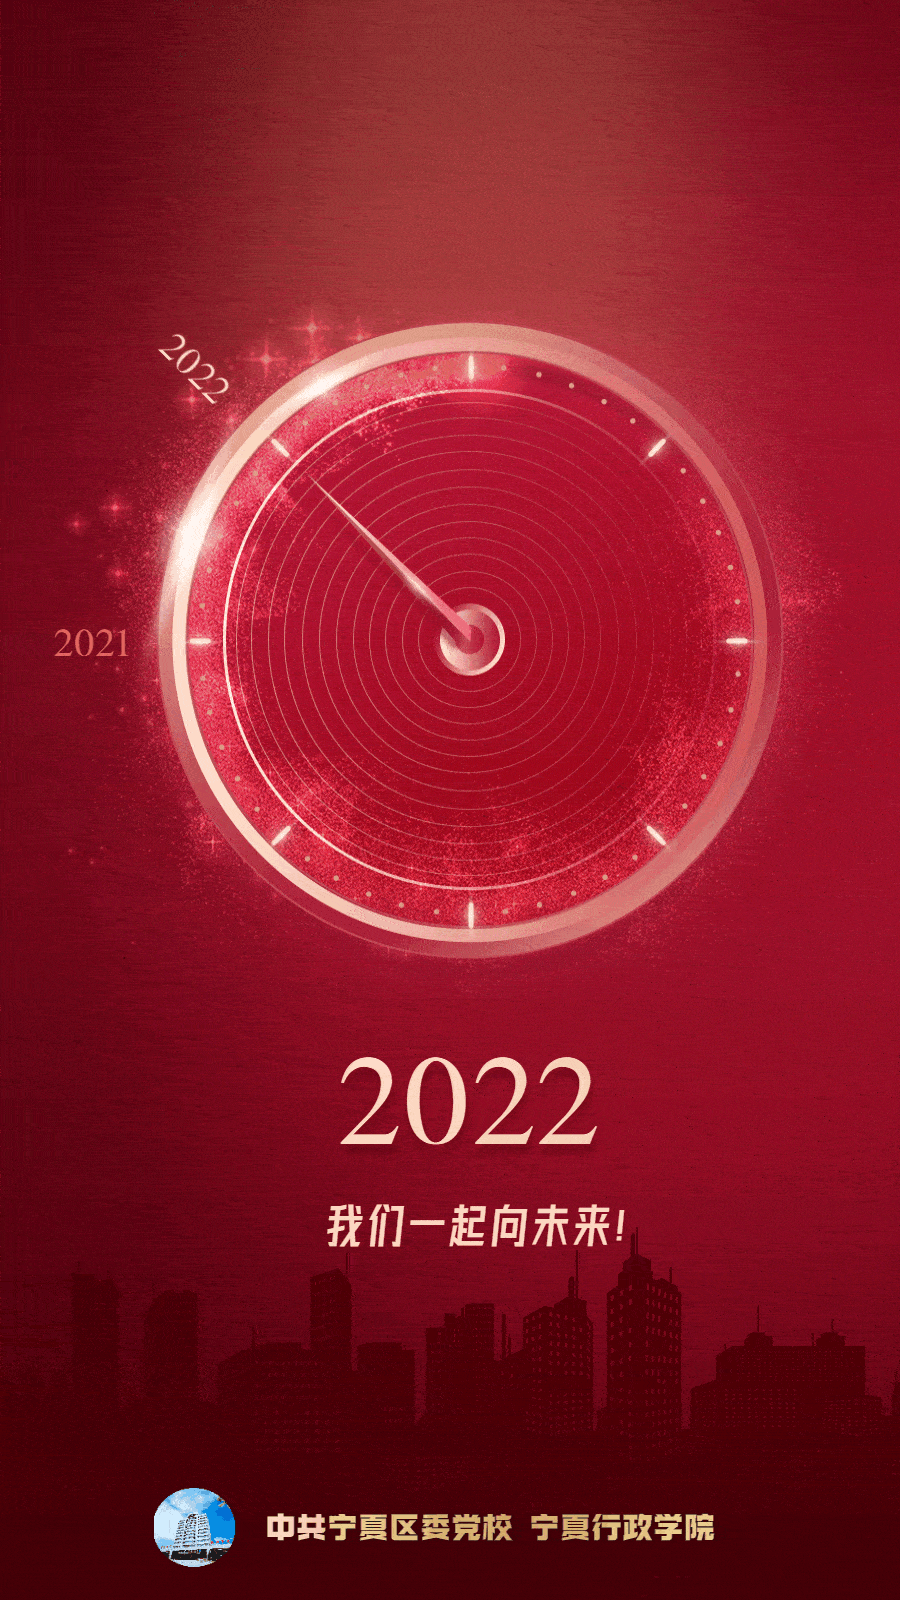 2022我们一起向未来这梦想谨记于心笃之于行